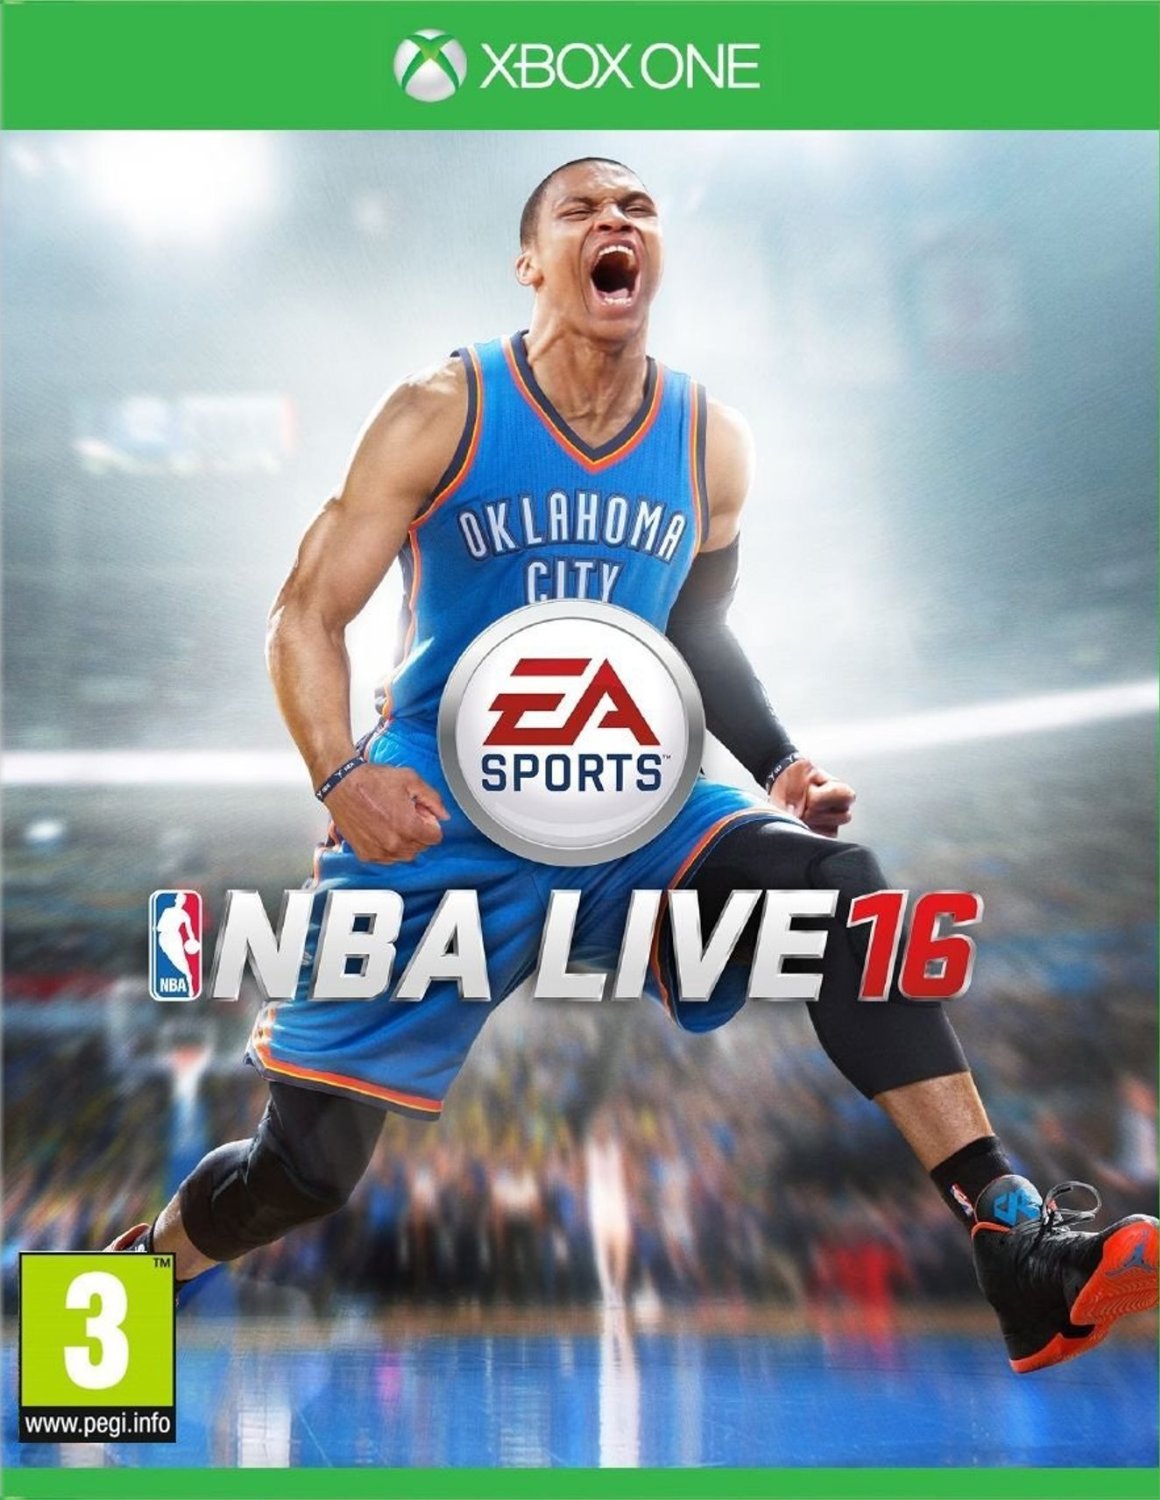 NBA Live 16 (Xbox One), EA Sports